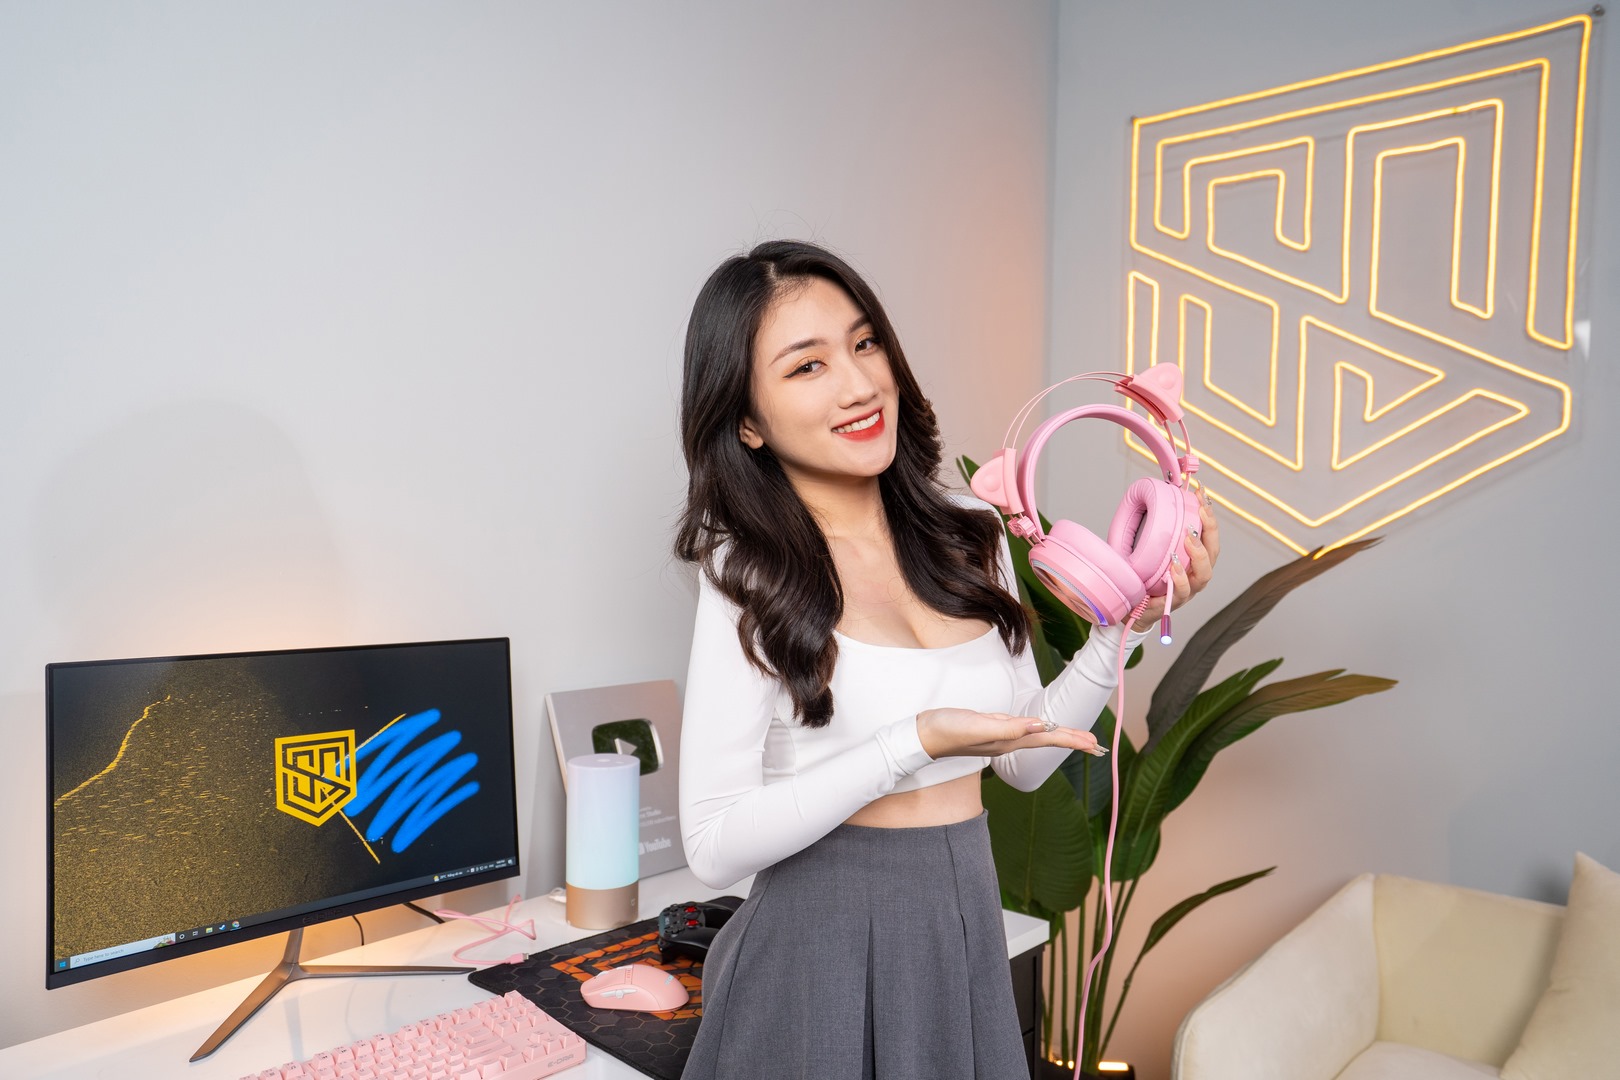 Thương hiệu Gaming Gear - E-Dra bắt tay hợp tác cùng “Mỹ nữ MC Esports” Linh Nắng